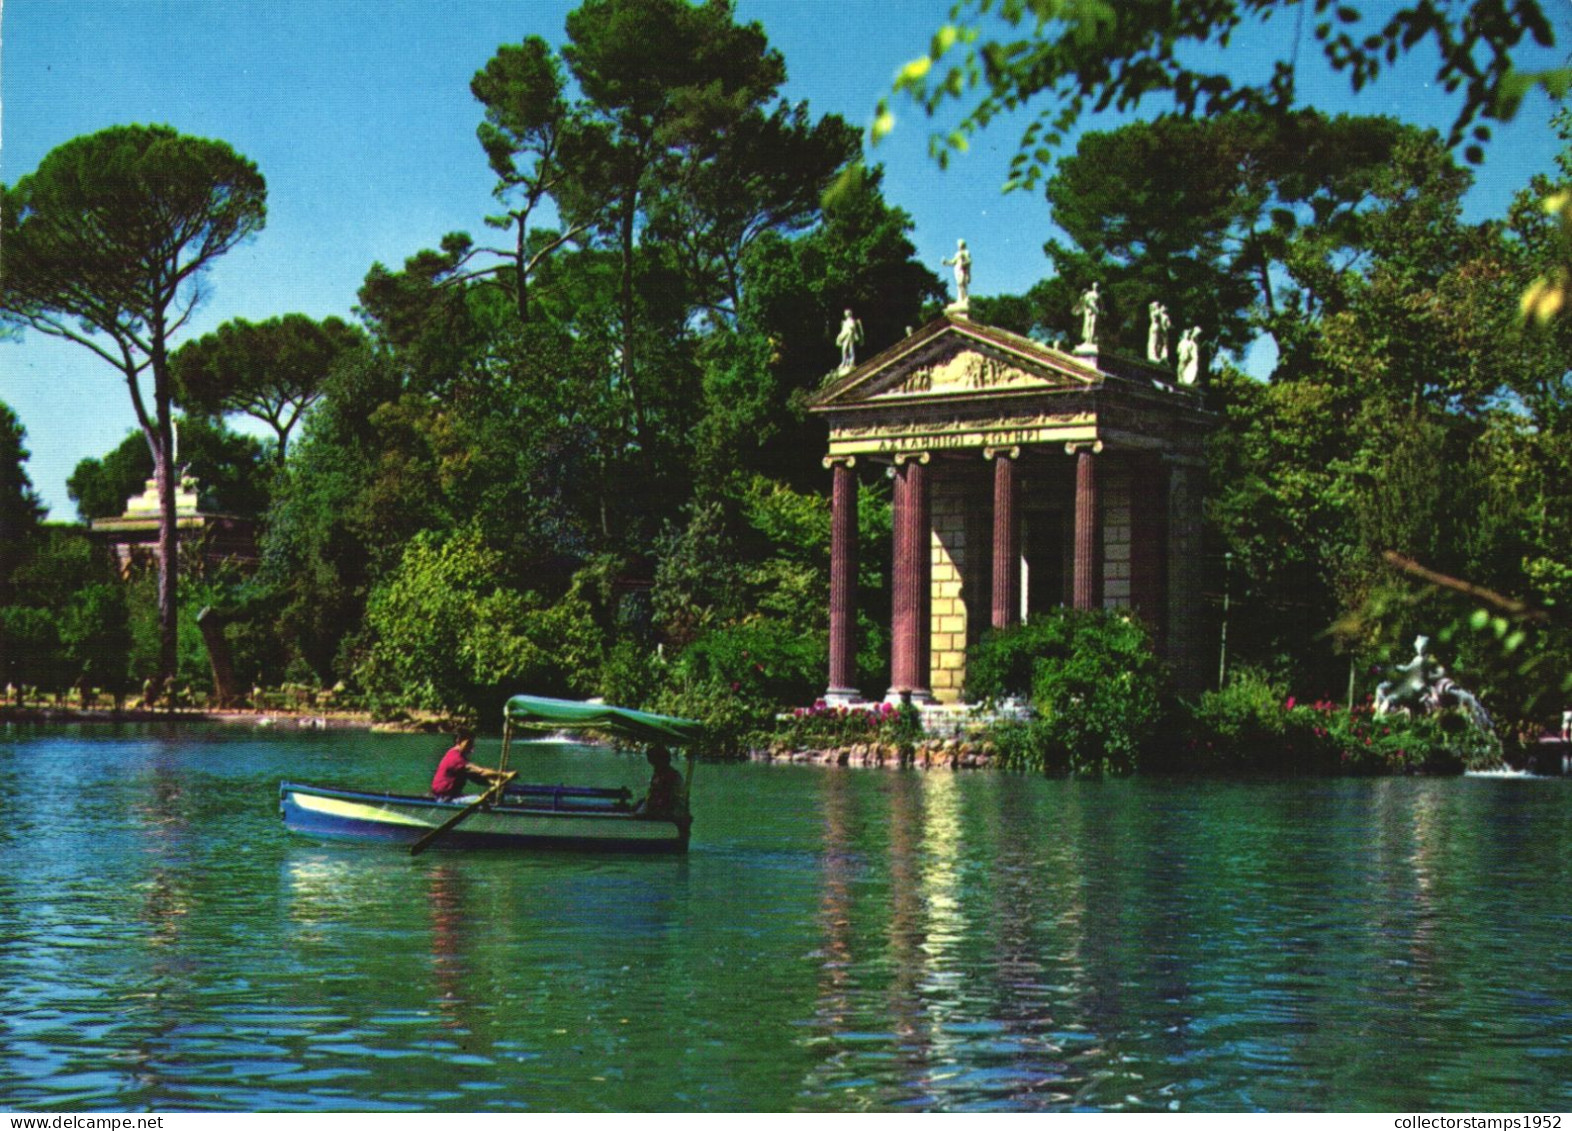 ROME, IL LAGHETTO, LAKE, ARCHITECTURE, BOAT, GARDEN, ITALY - Parks & Gardens